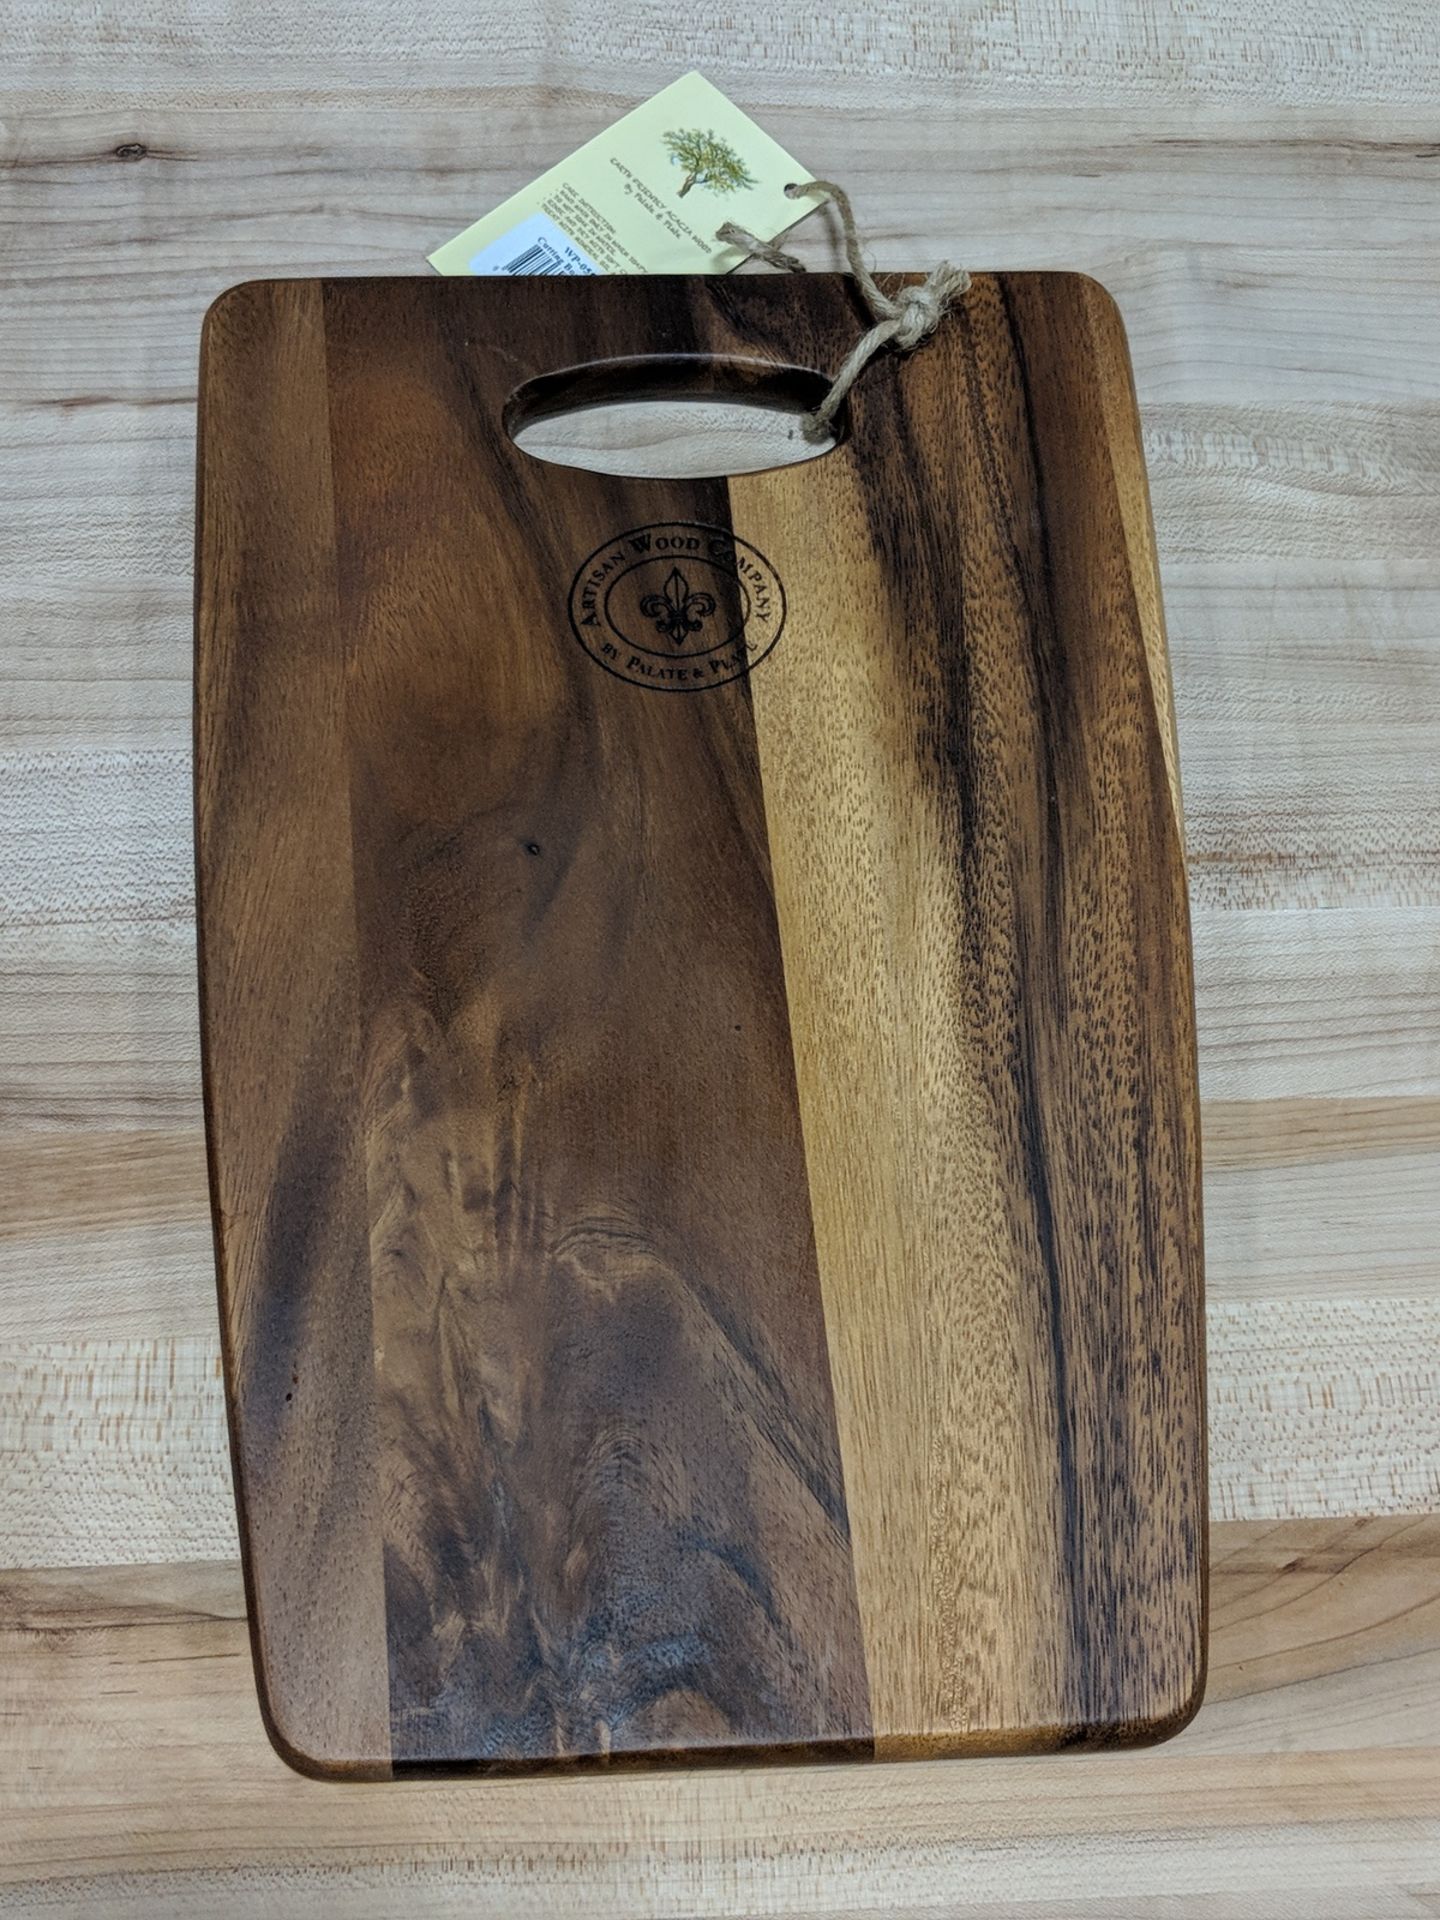 14" x 9" Acacia Wood Cutting Board, Palate & Plate WP-0550